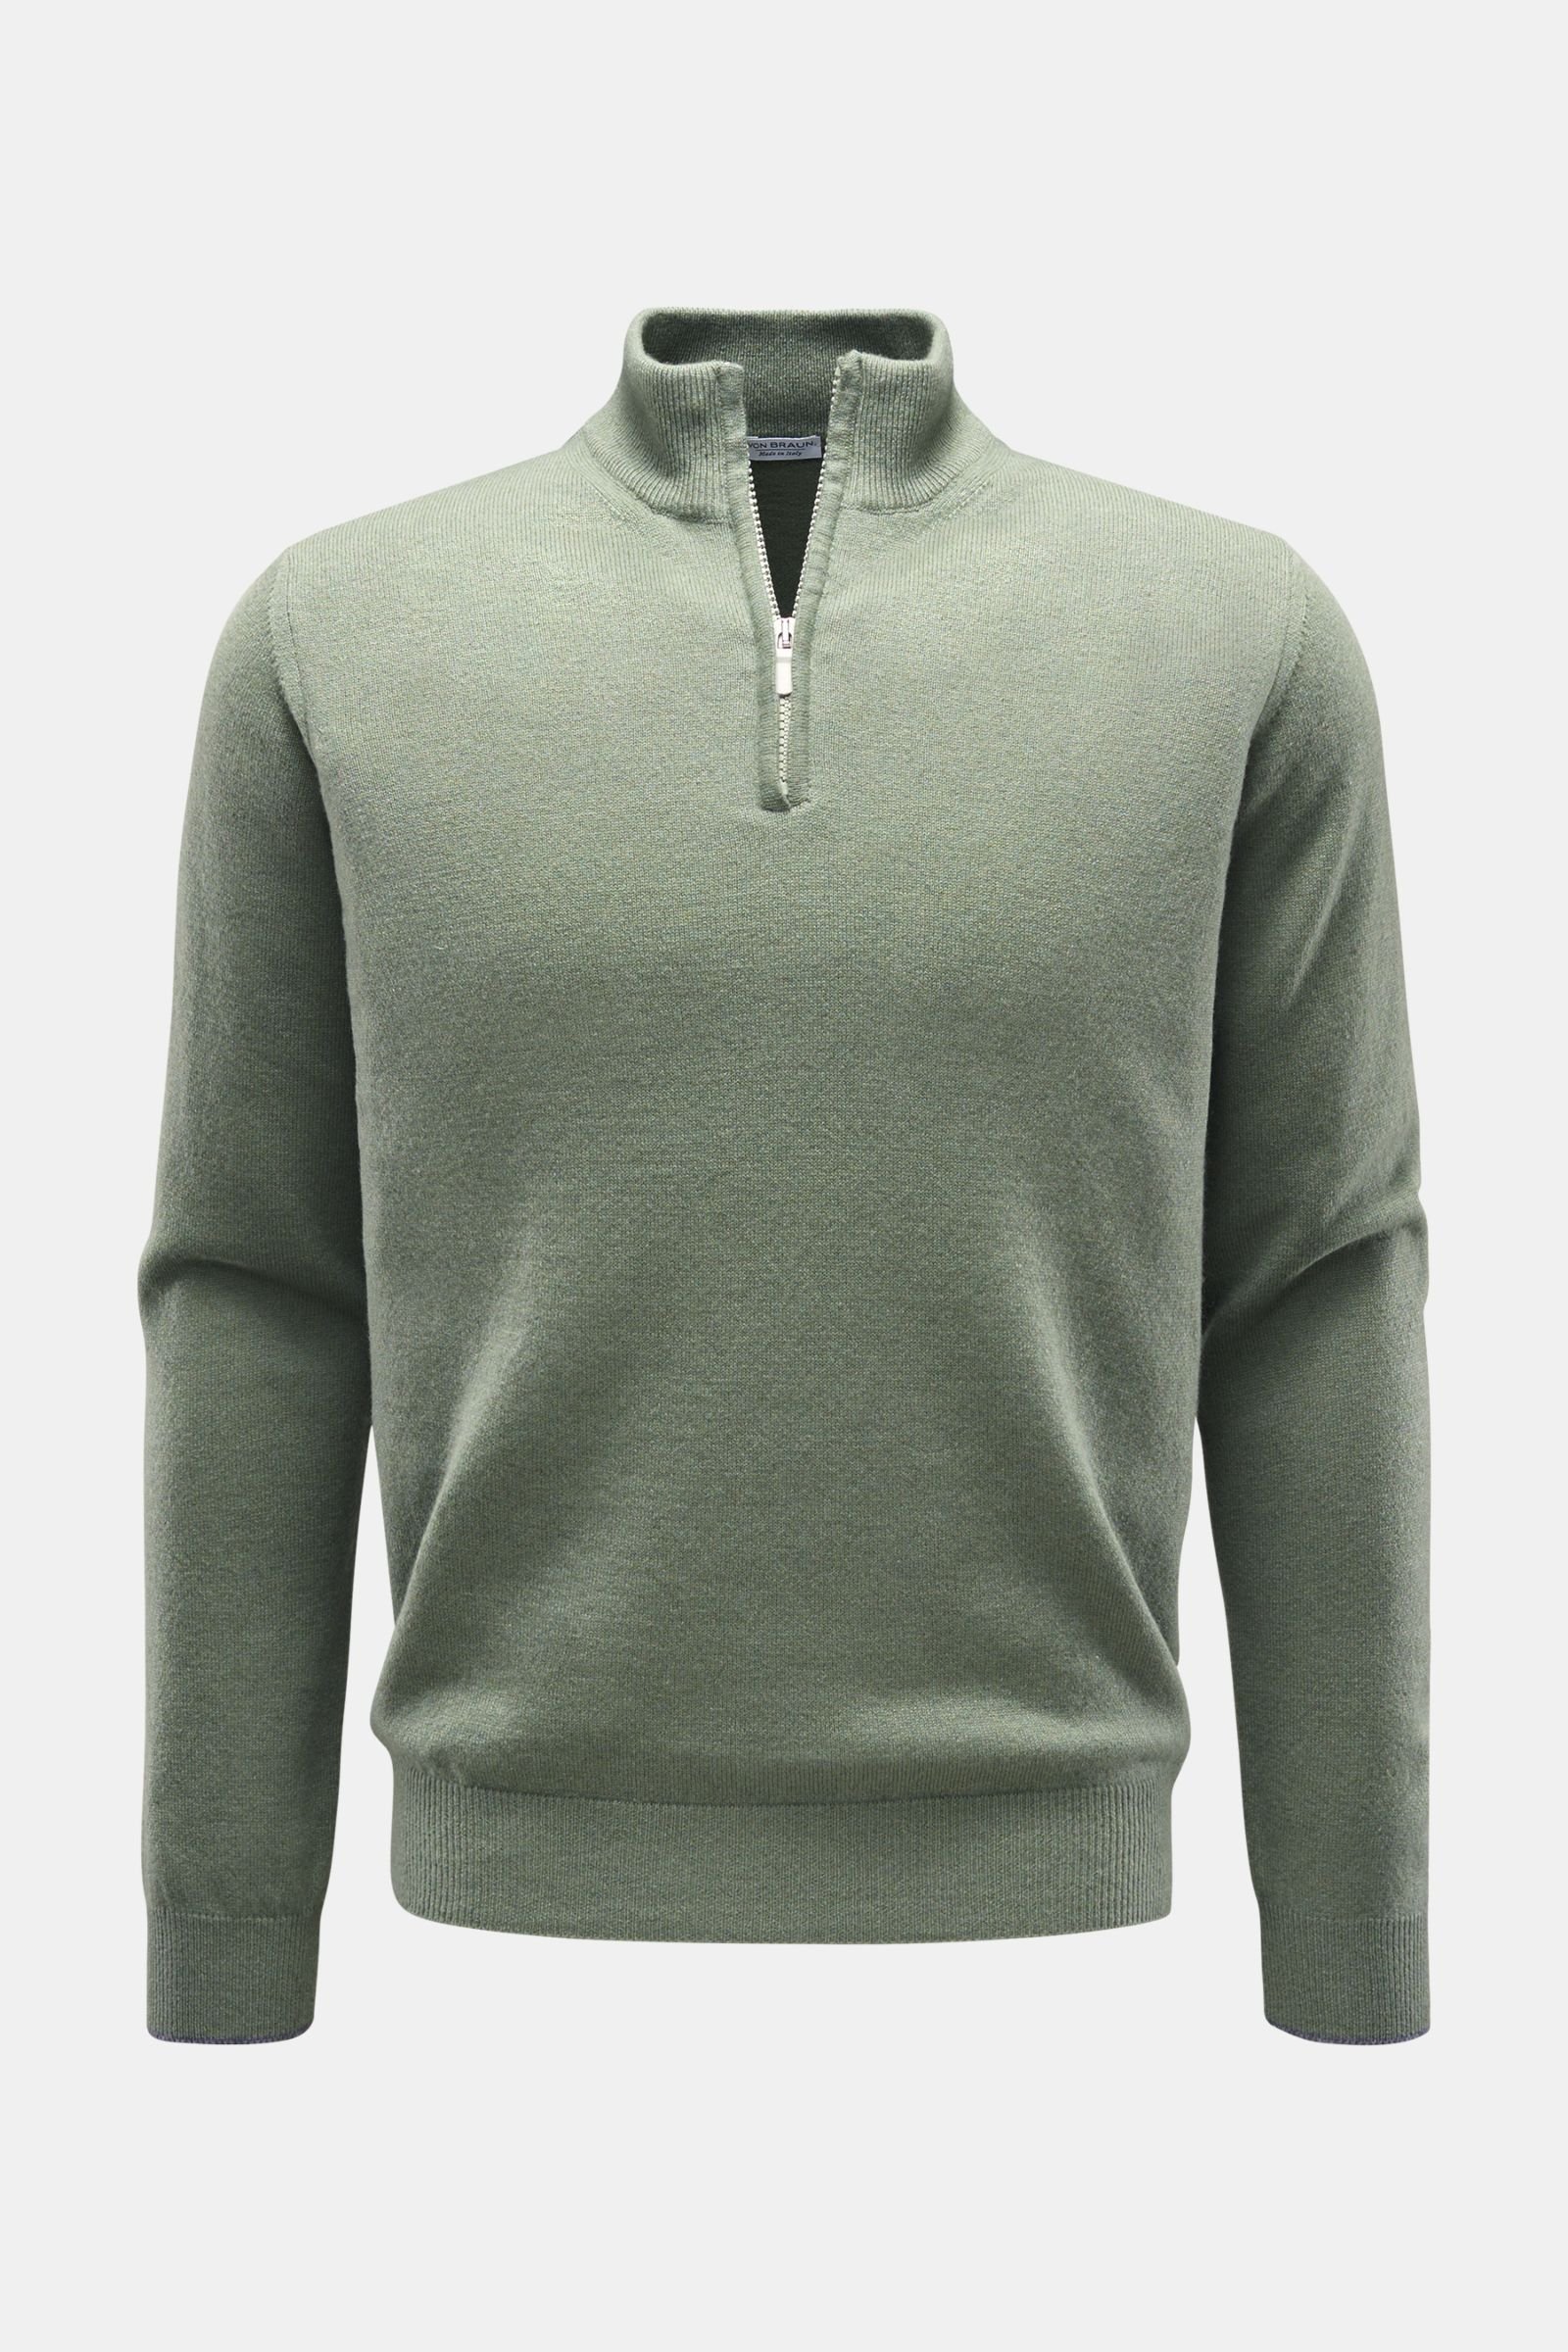 Cashmere half-zip jumper grey-green